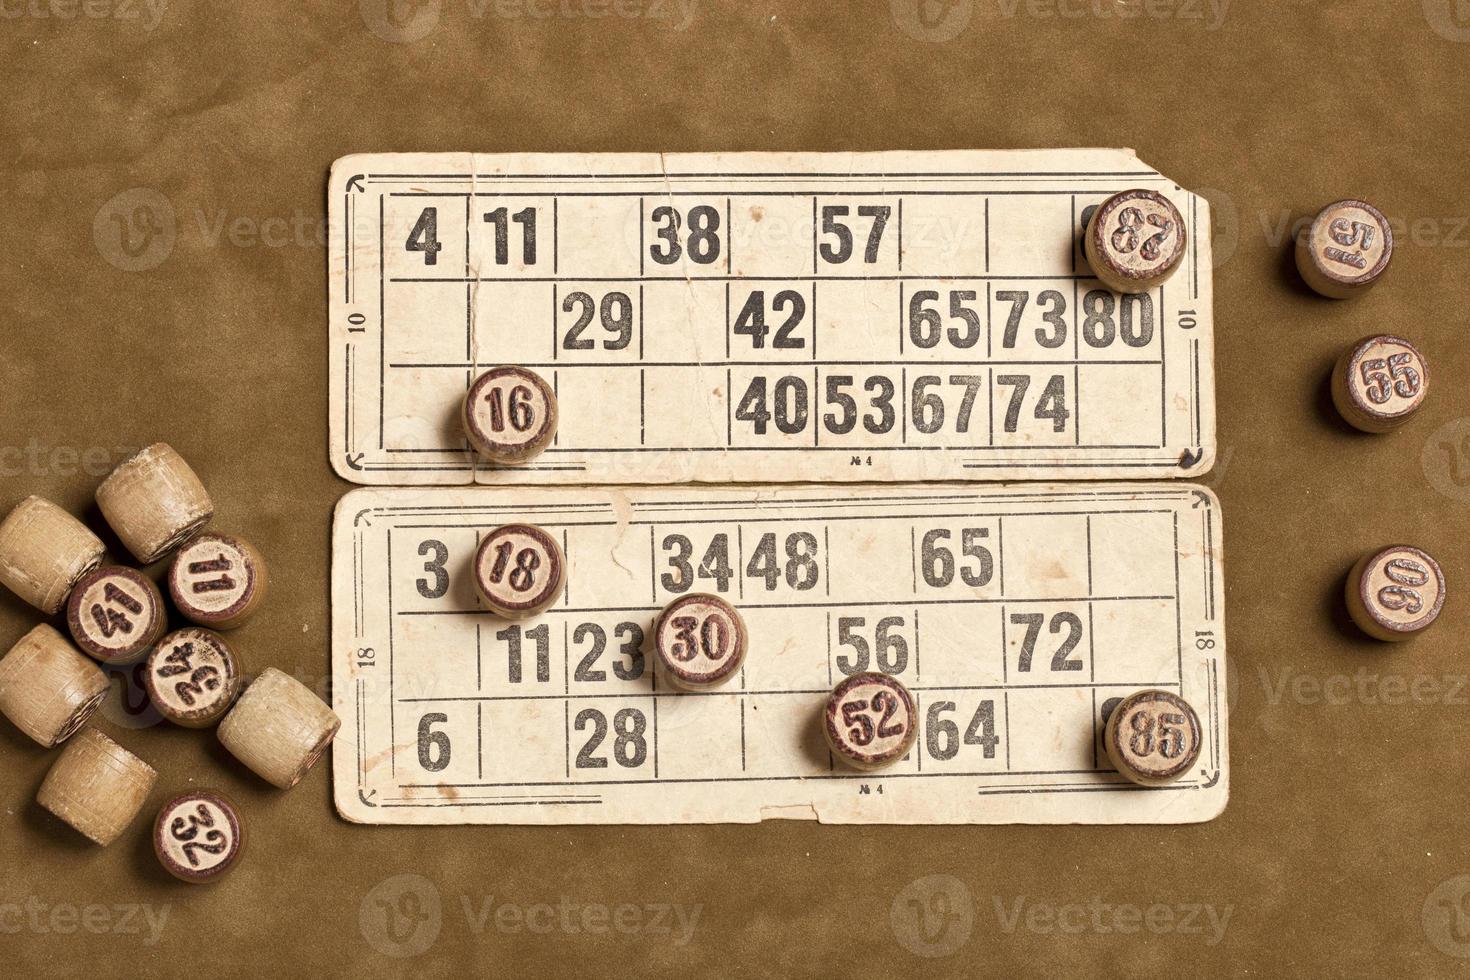 tafelspel bingo. houten lottovaten met zak, speelkaarten voor lottokaartspel, vrije tijd, spelen, strategie, gokken, loterij, foto